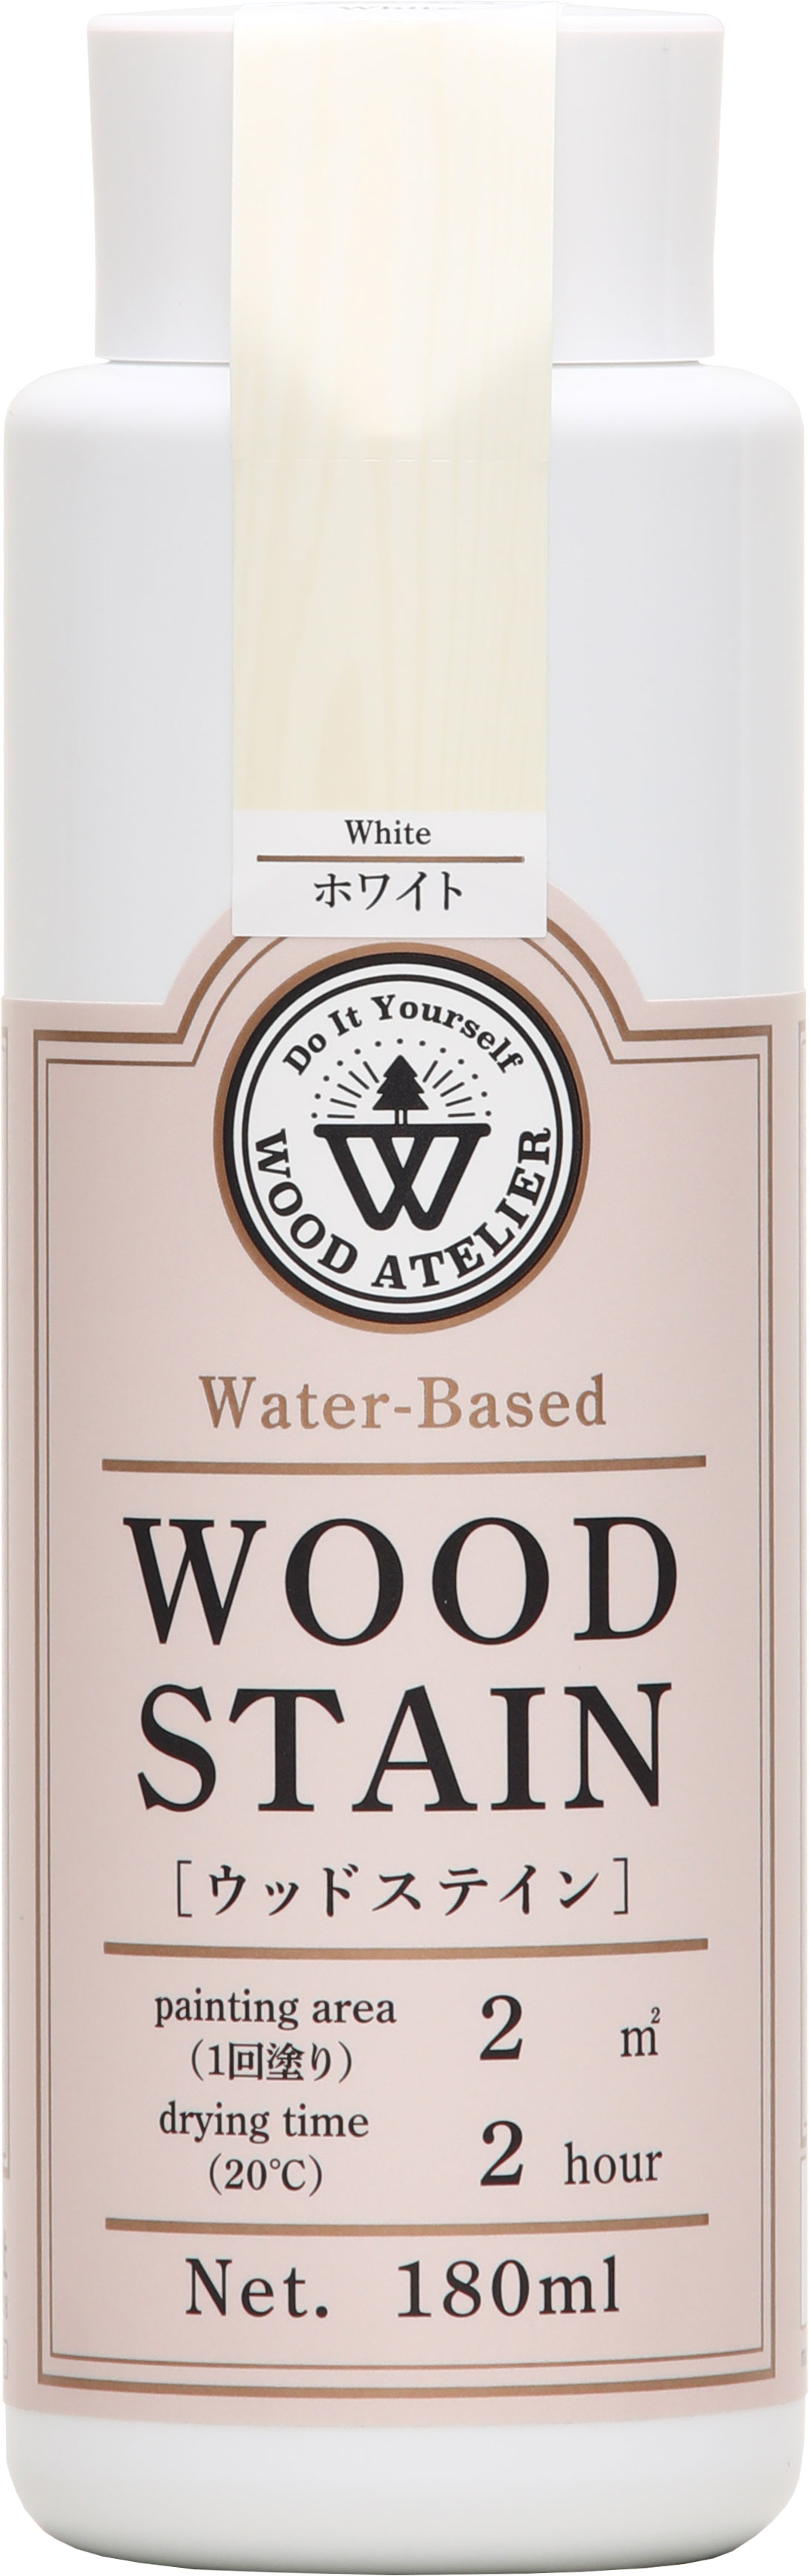 和信ペイント Wood Atelier ウッドステイン WS-01 ホワイト 180ml No.800651 [A190803]